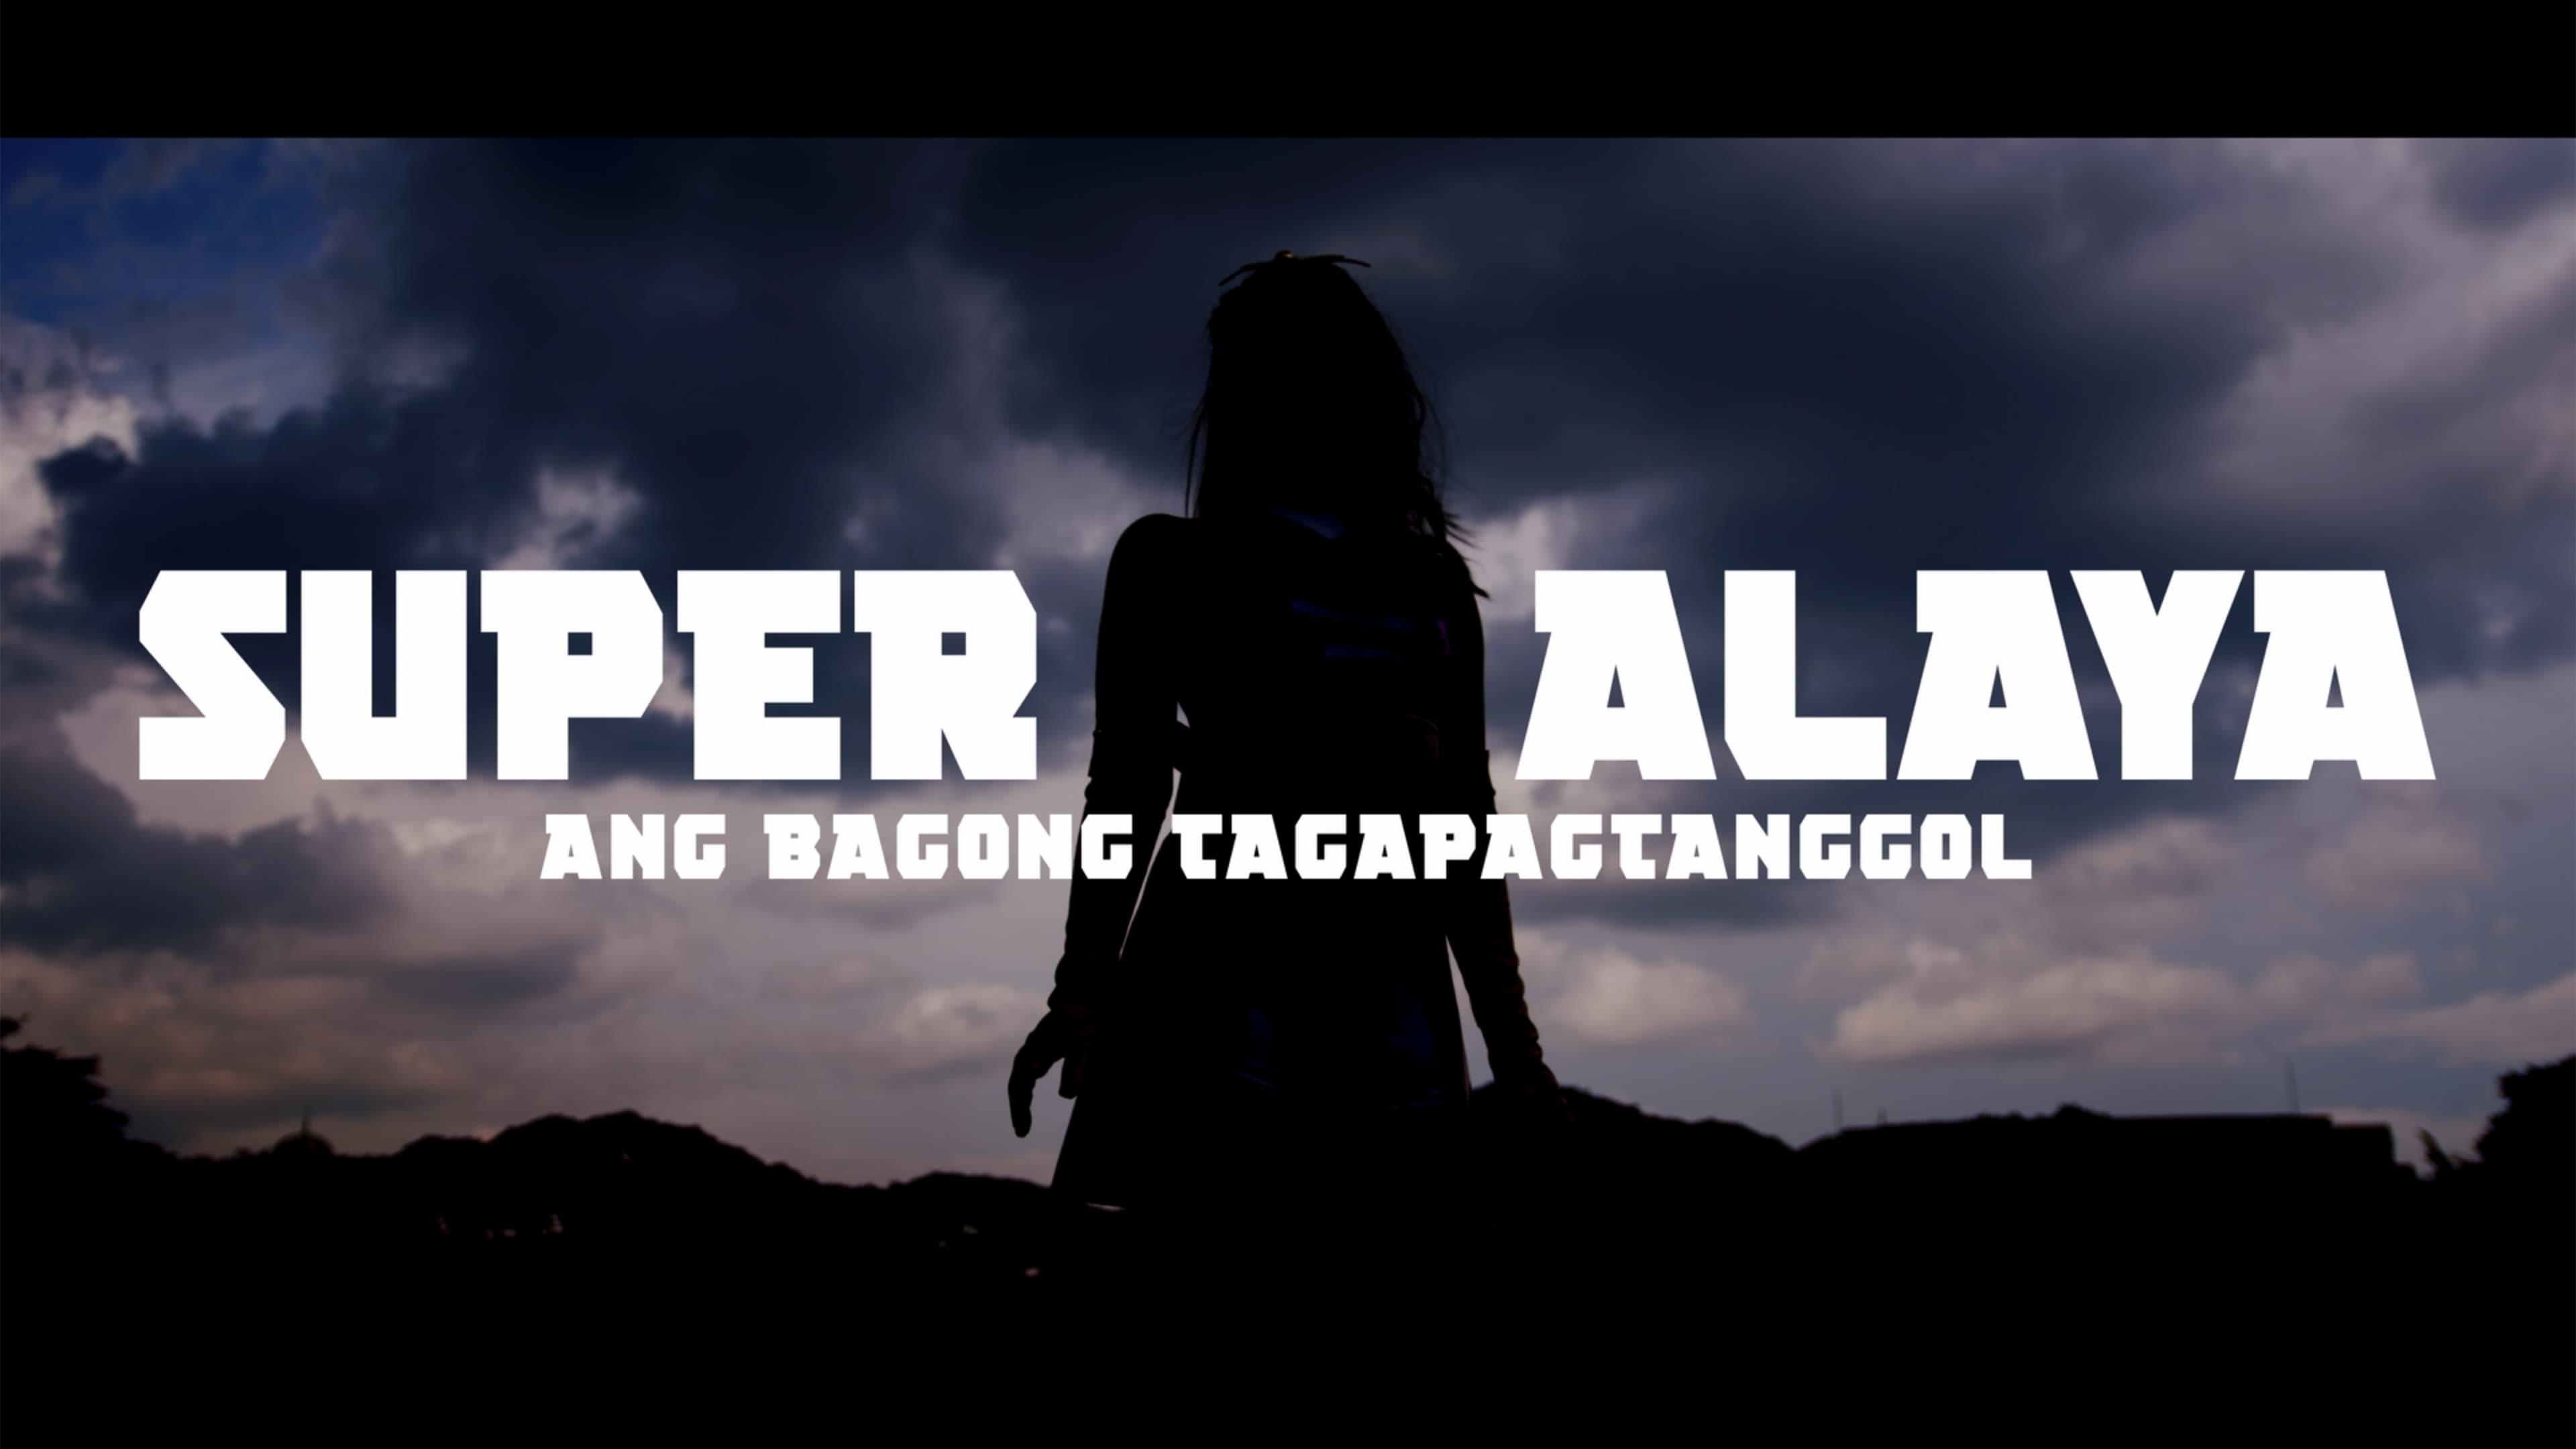 Super Alaya: Ang Bagong Tagapagtanggol backdrop